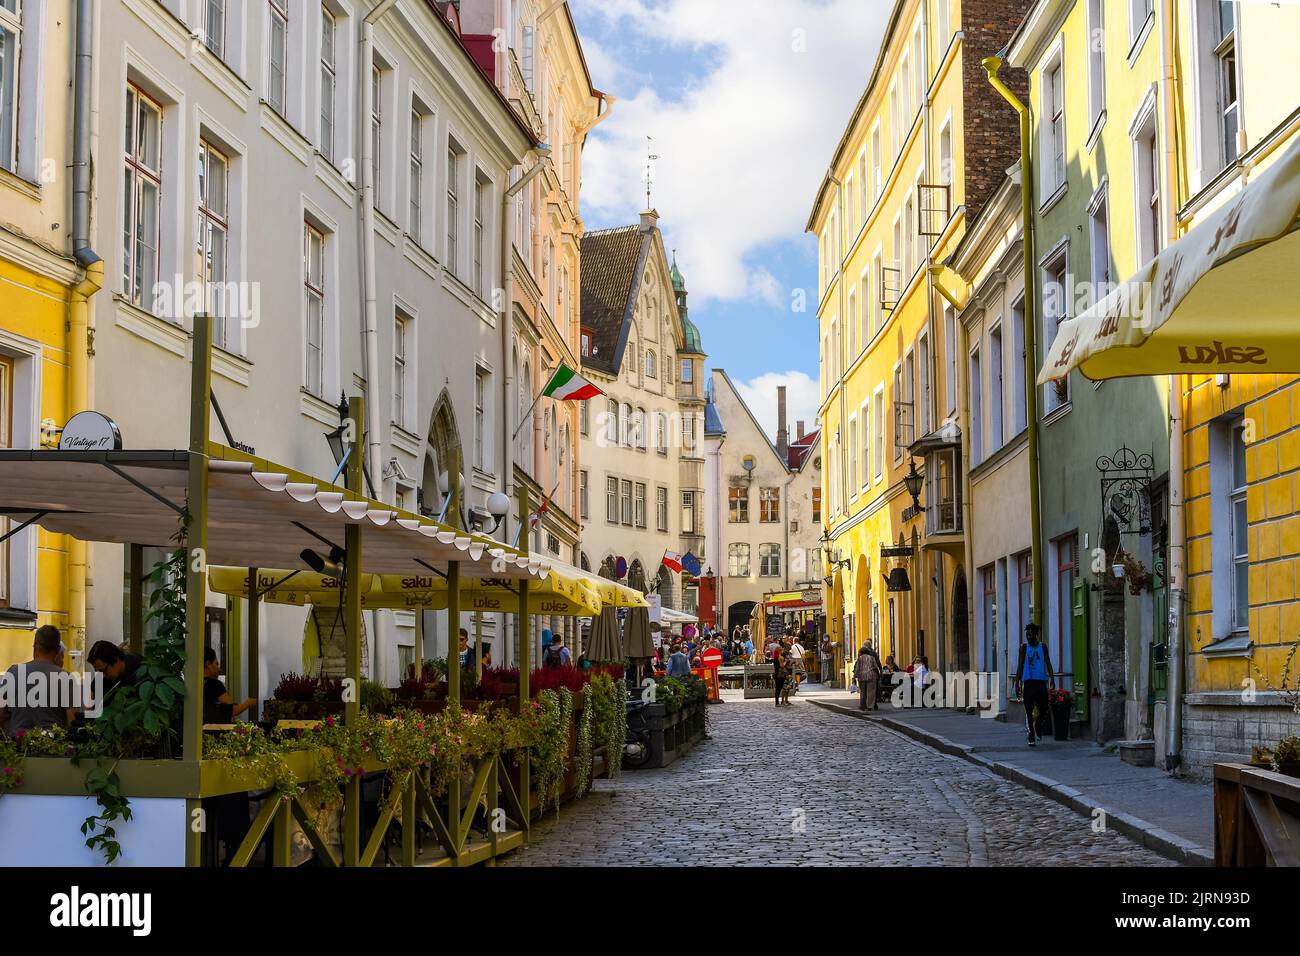 Une rue pavée pittoresque de cafés et de boutiques près de la maison de l'évêque dans la vieille ville médiévale de Tallinn, dans la région Baltique du Nord Banque D'Images